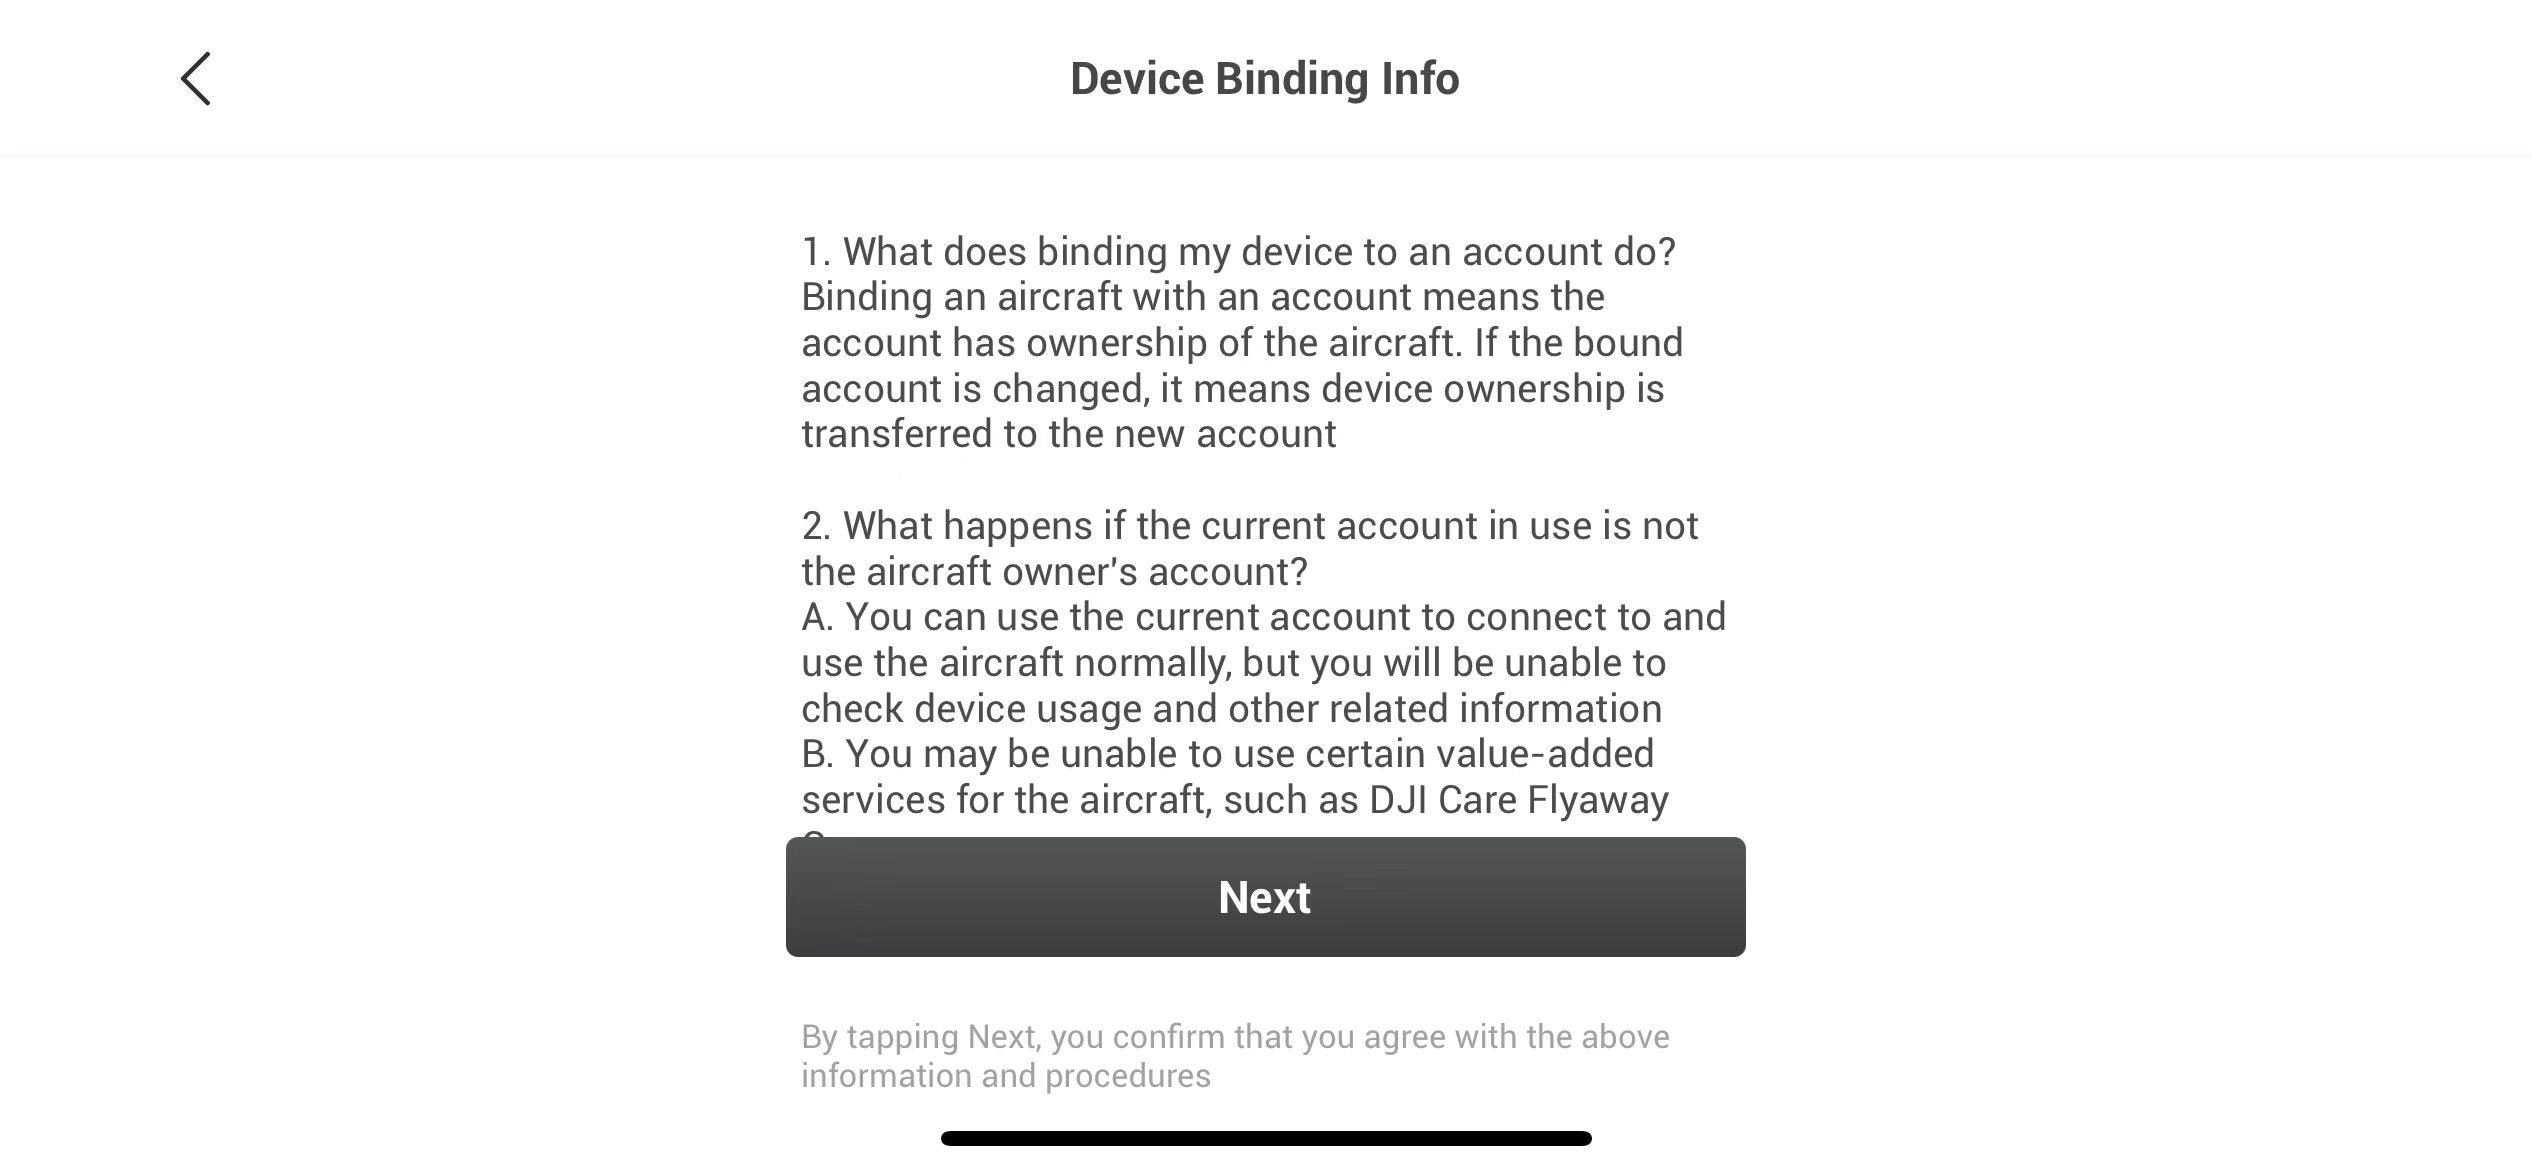 Skärmbild av en informationssida med titeln "Device Binding Info". Texten förklarar vad det innebär att binda en enhet till ett konto och vad som händer om det aktuella kontot inte är ägarens konto. Det finns en "Next"-knapp längst ner på sidan.